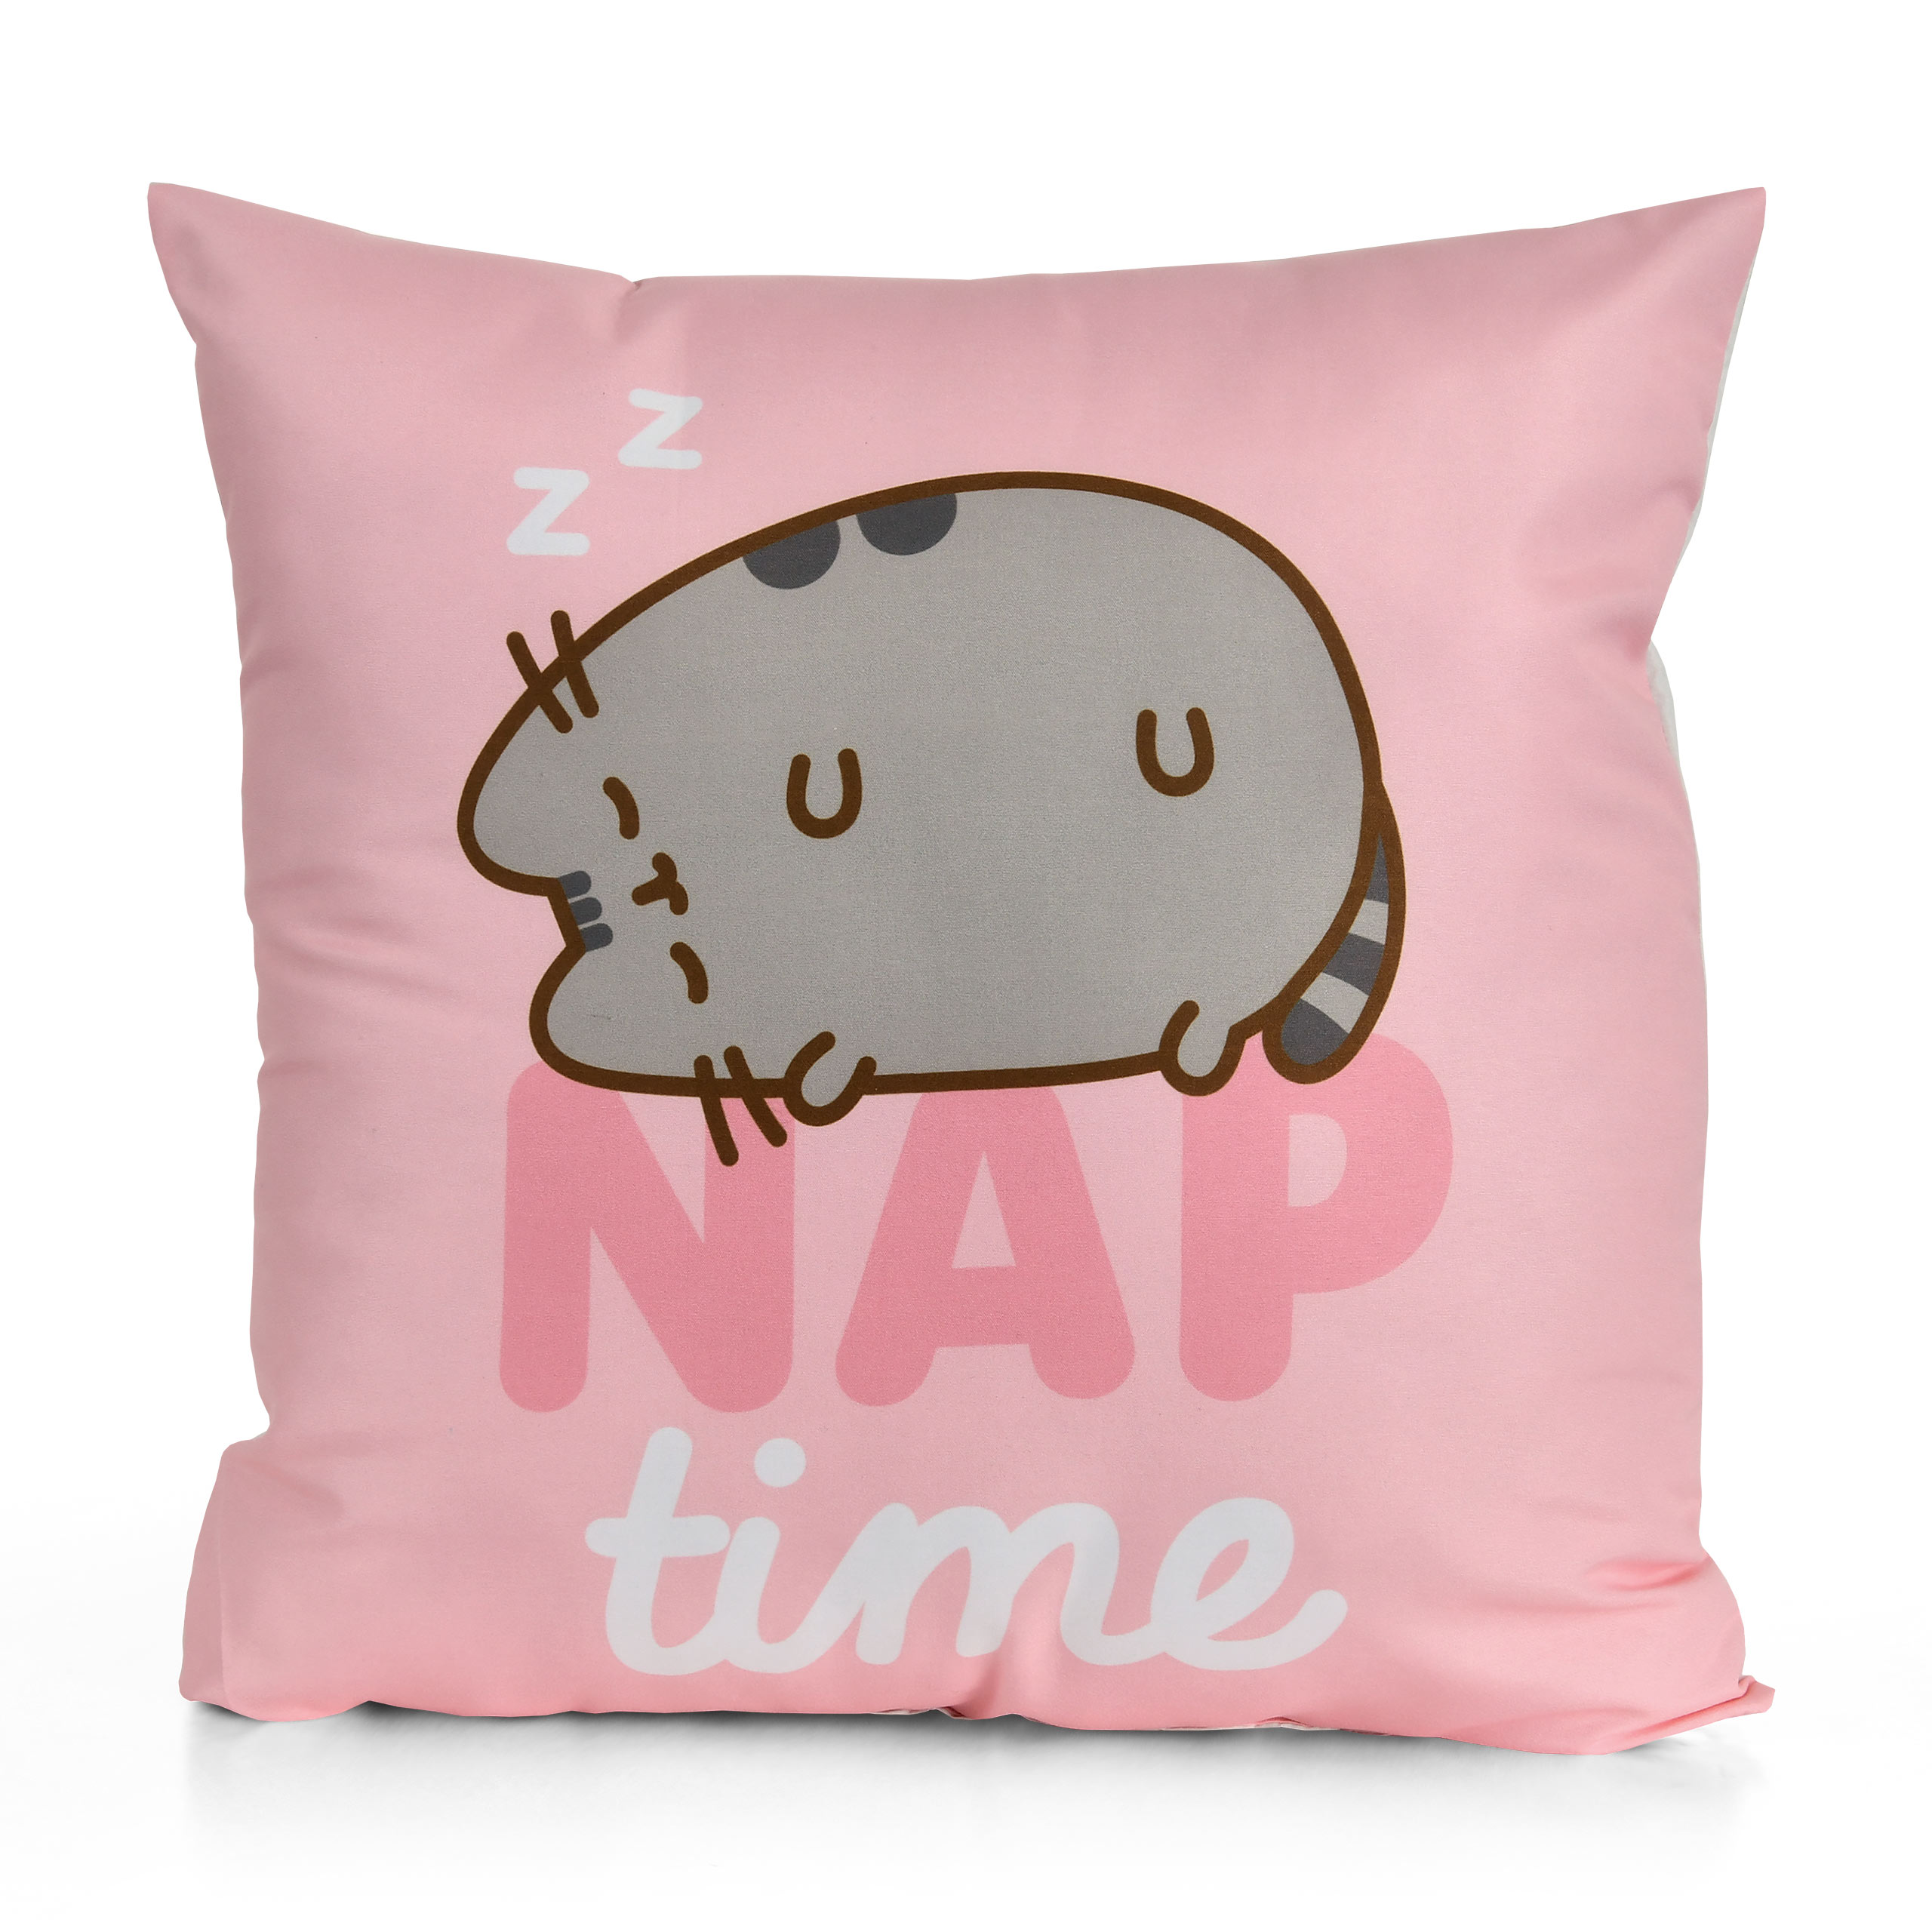 Pusheen - Nap time Pillow